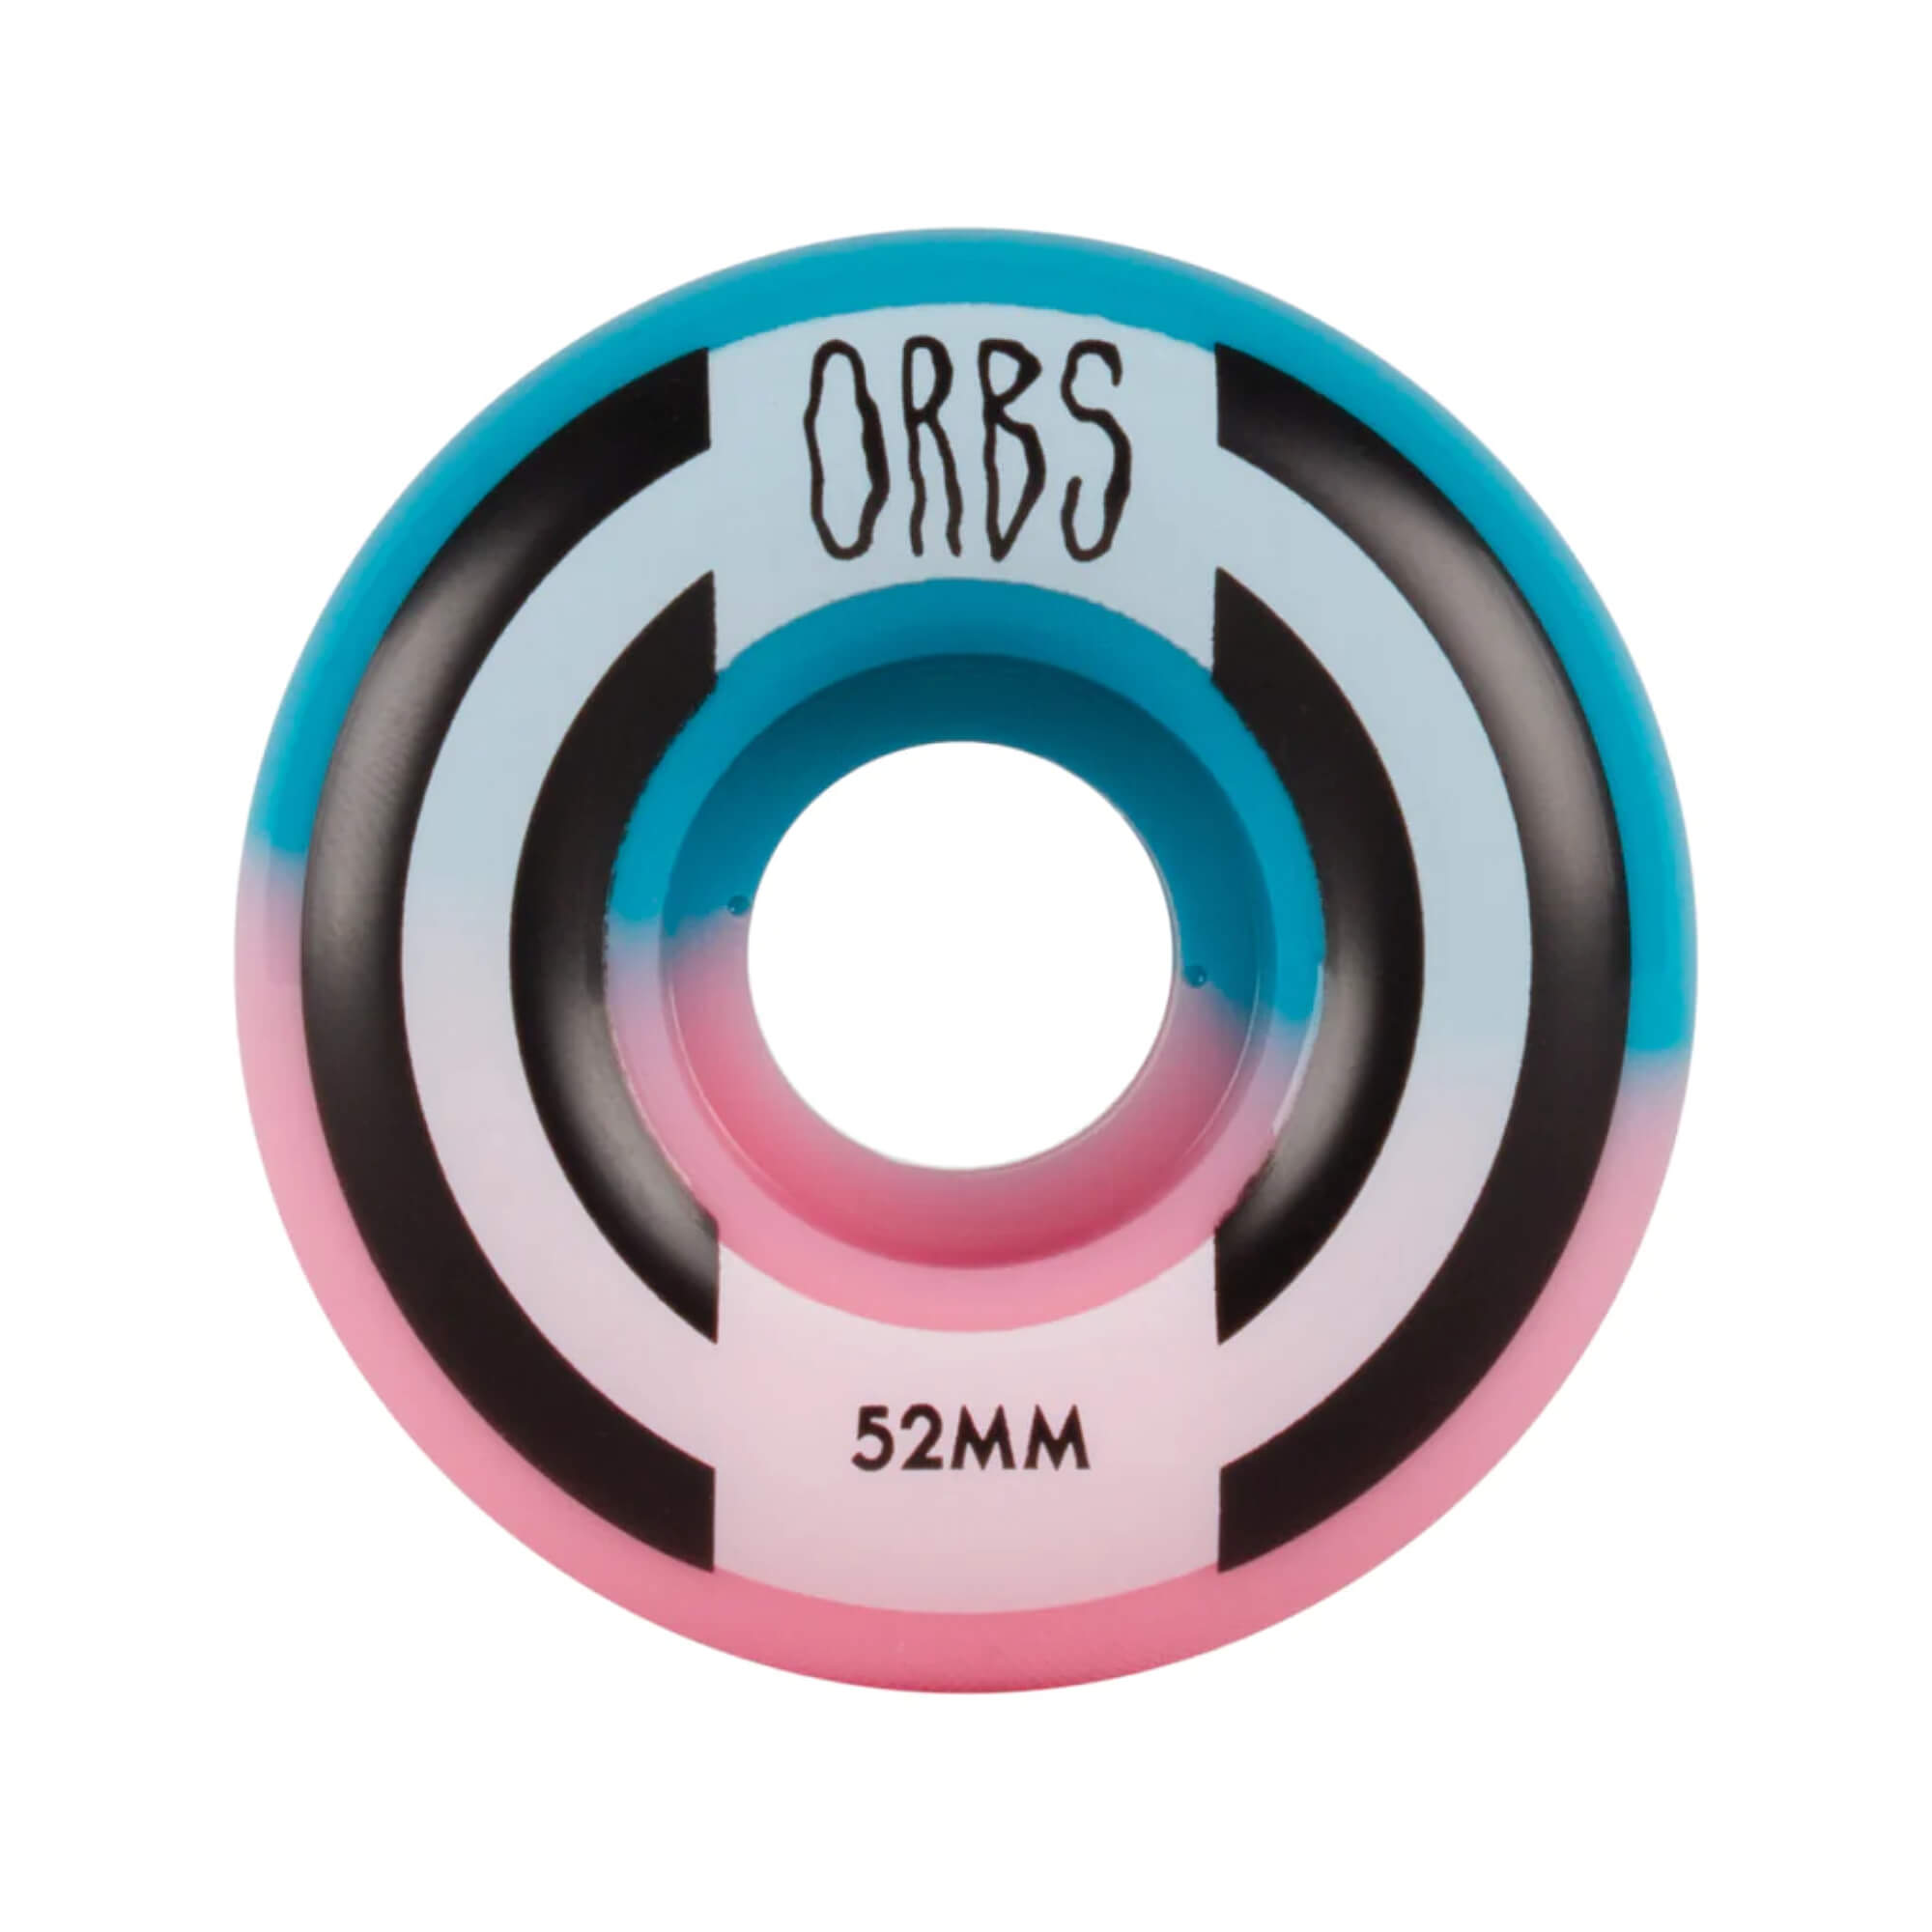 Orbs Skateboard Wheels Apparitions Splits 52mm Pink Blue